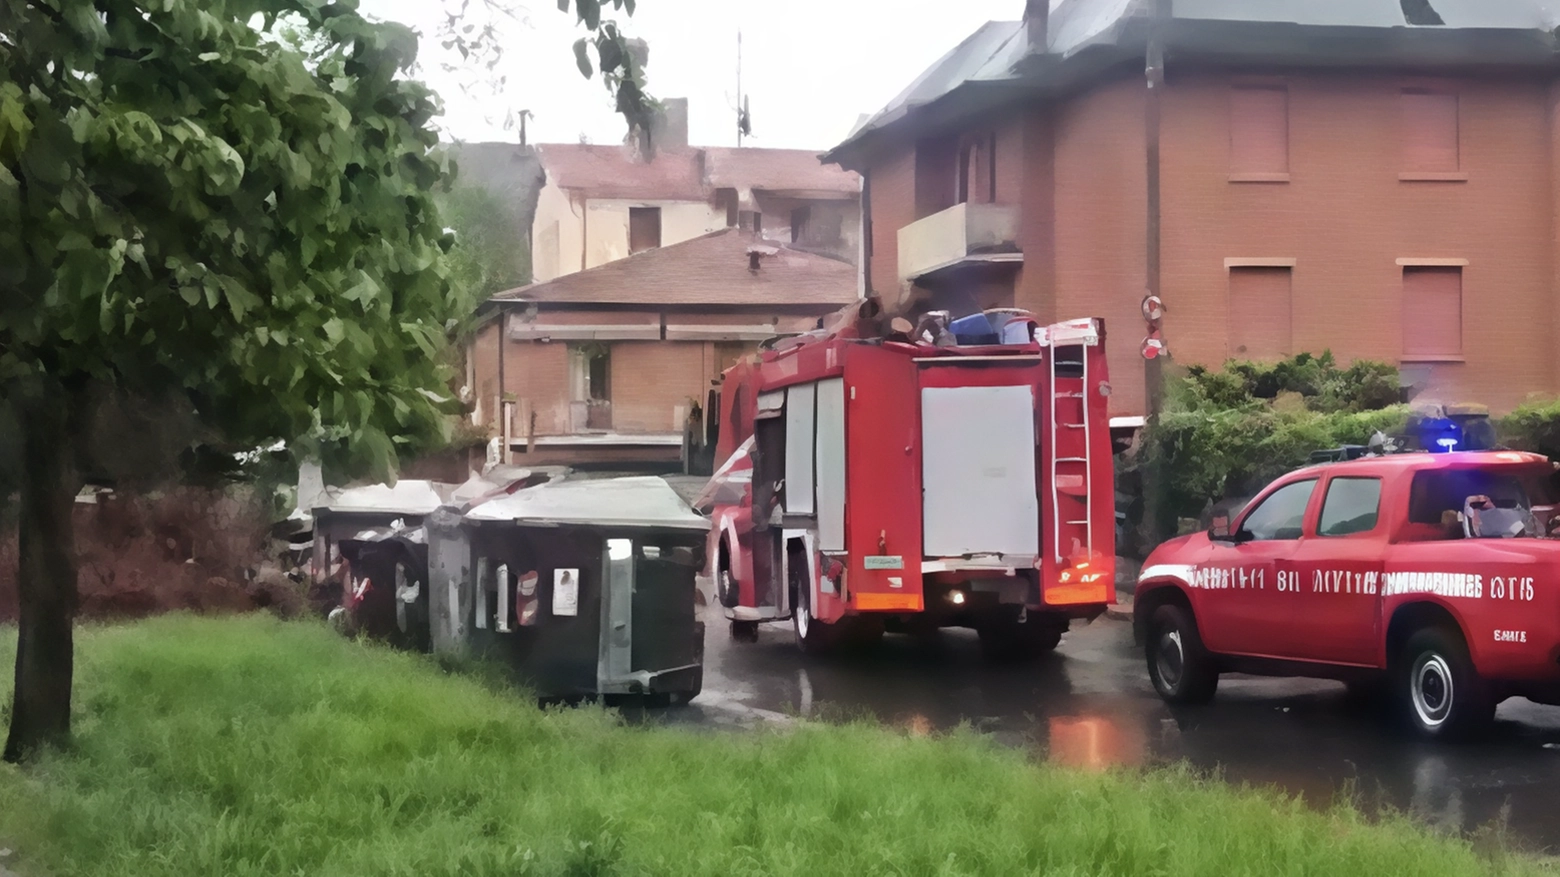 Giornata di maltempo a Modena: forti raffiche di vento e pioggia causano caduta alberi e infiltrazioni. Interventi dei vigili del fuoco in città e provincia. Disagi ma nessun danno grave riportato.